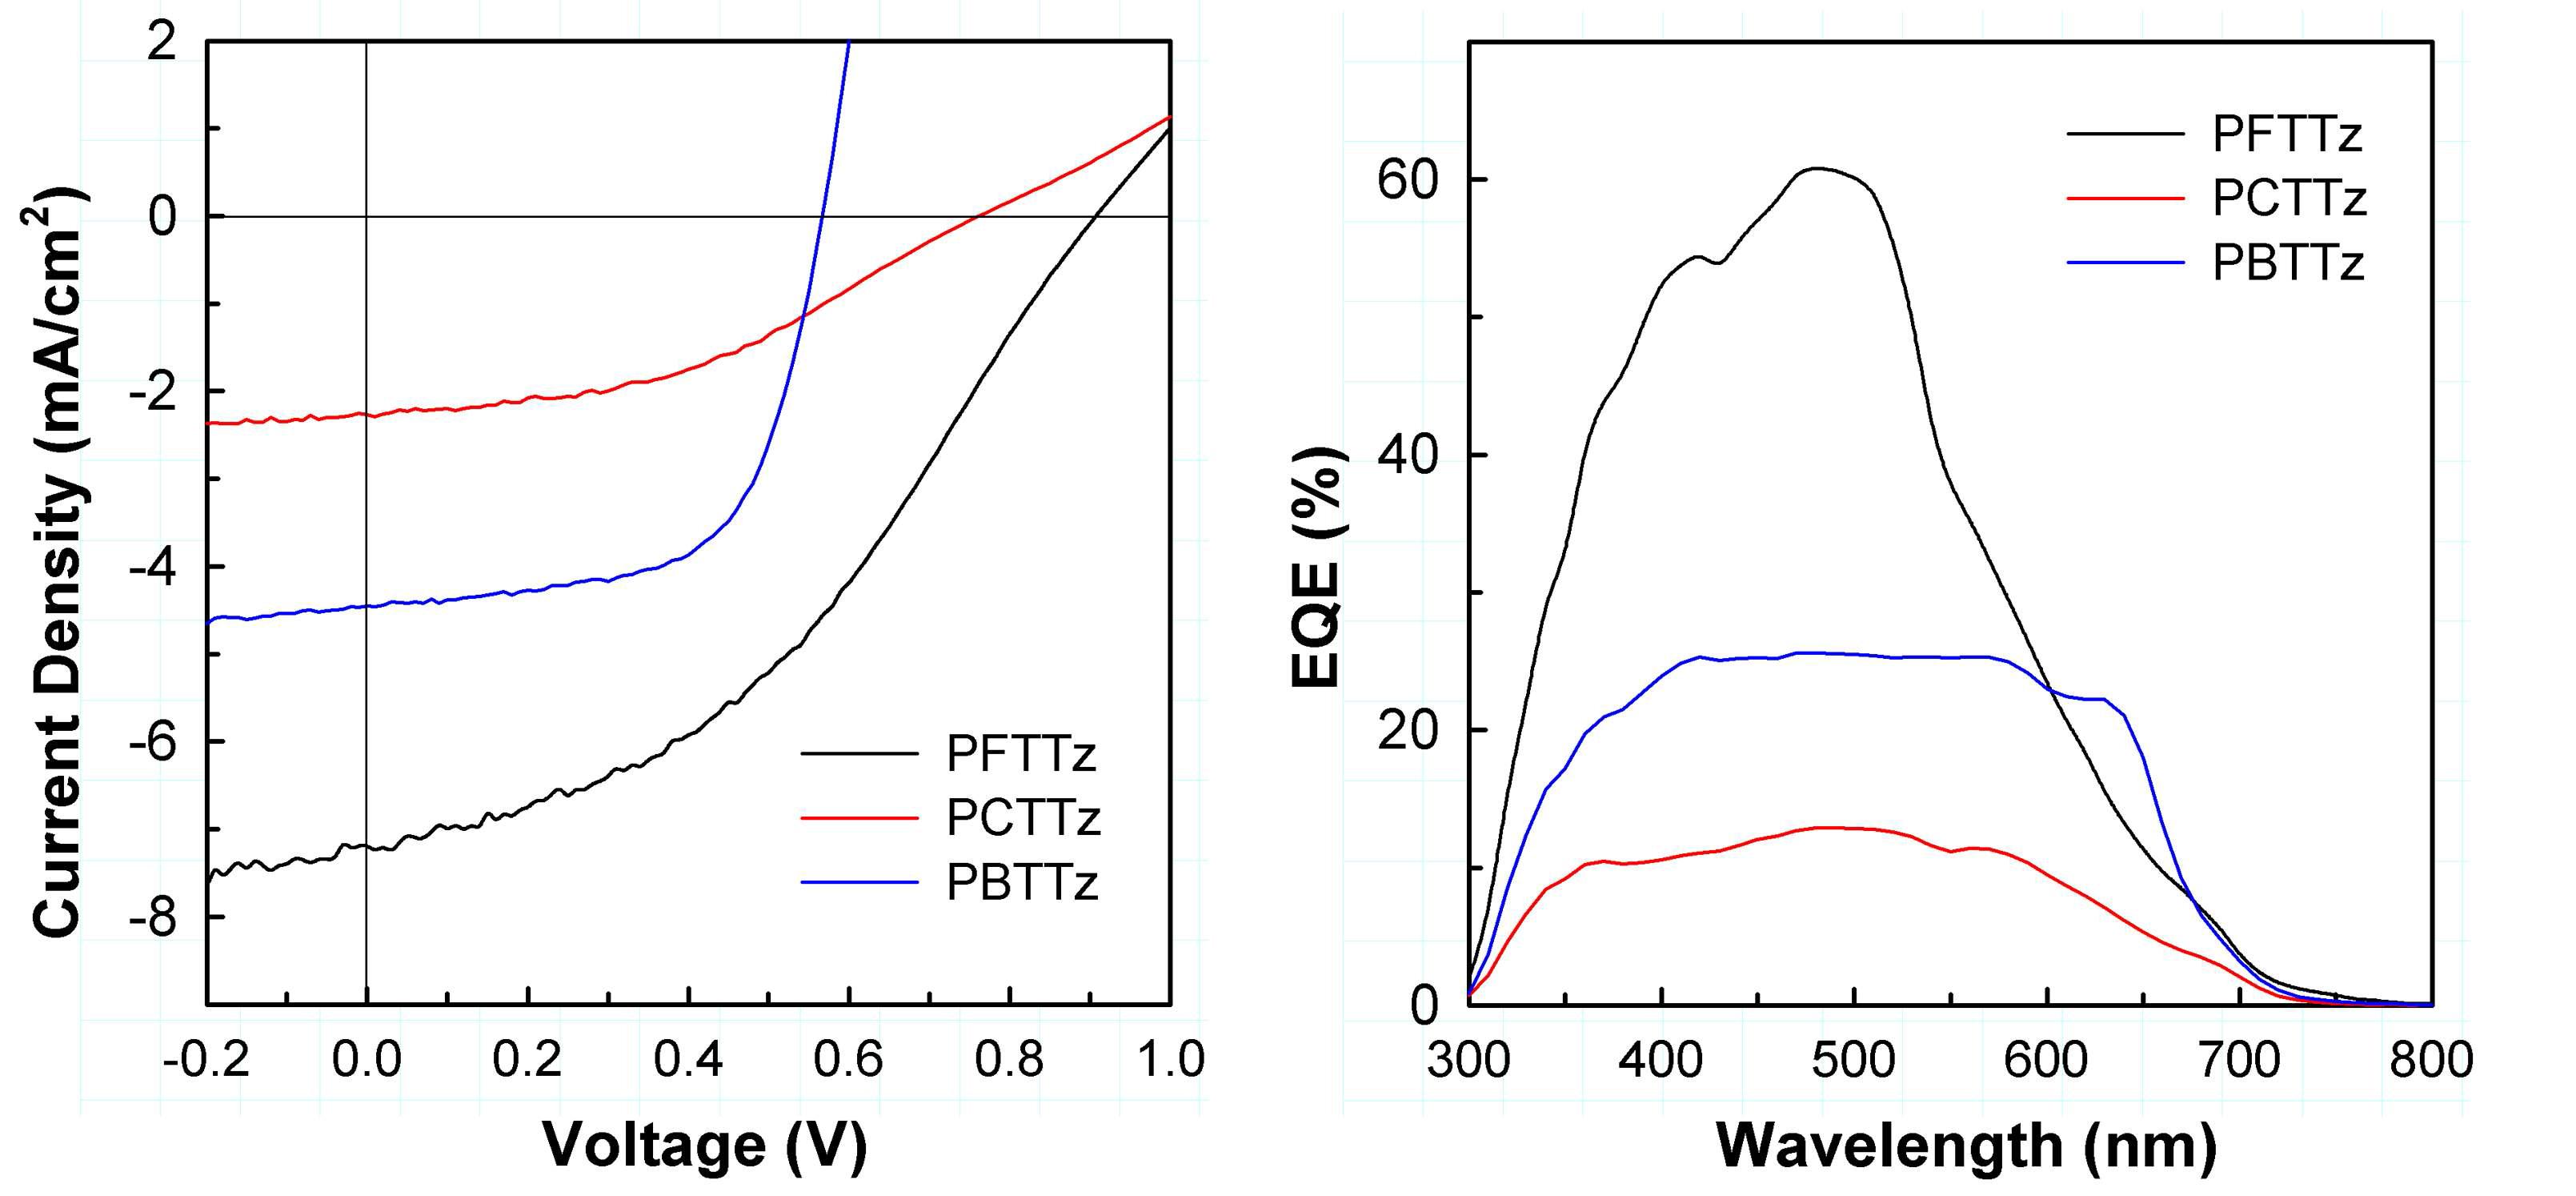 TTz 고분자/PC71BM BHJ 태양전지의 J-V 곡선과 EQE 스펙트럼.